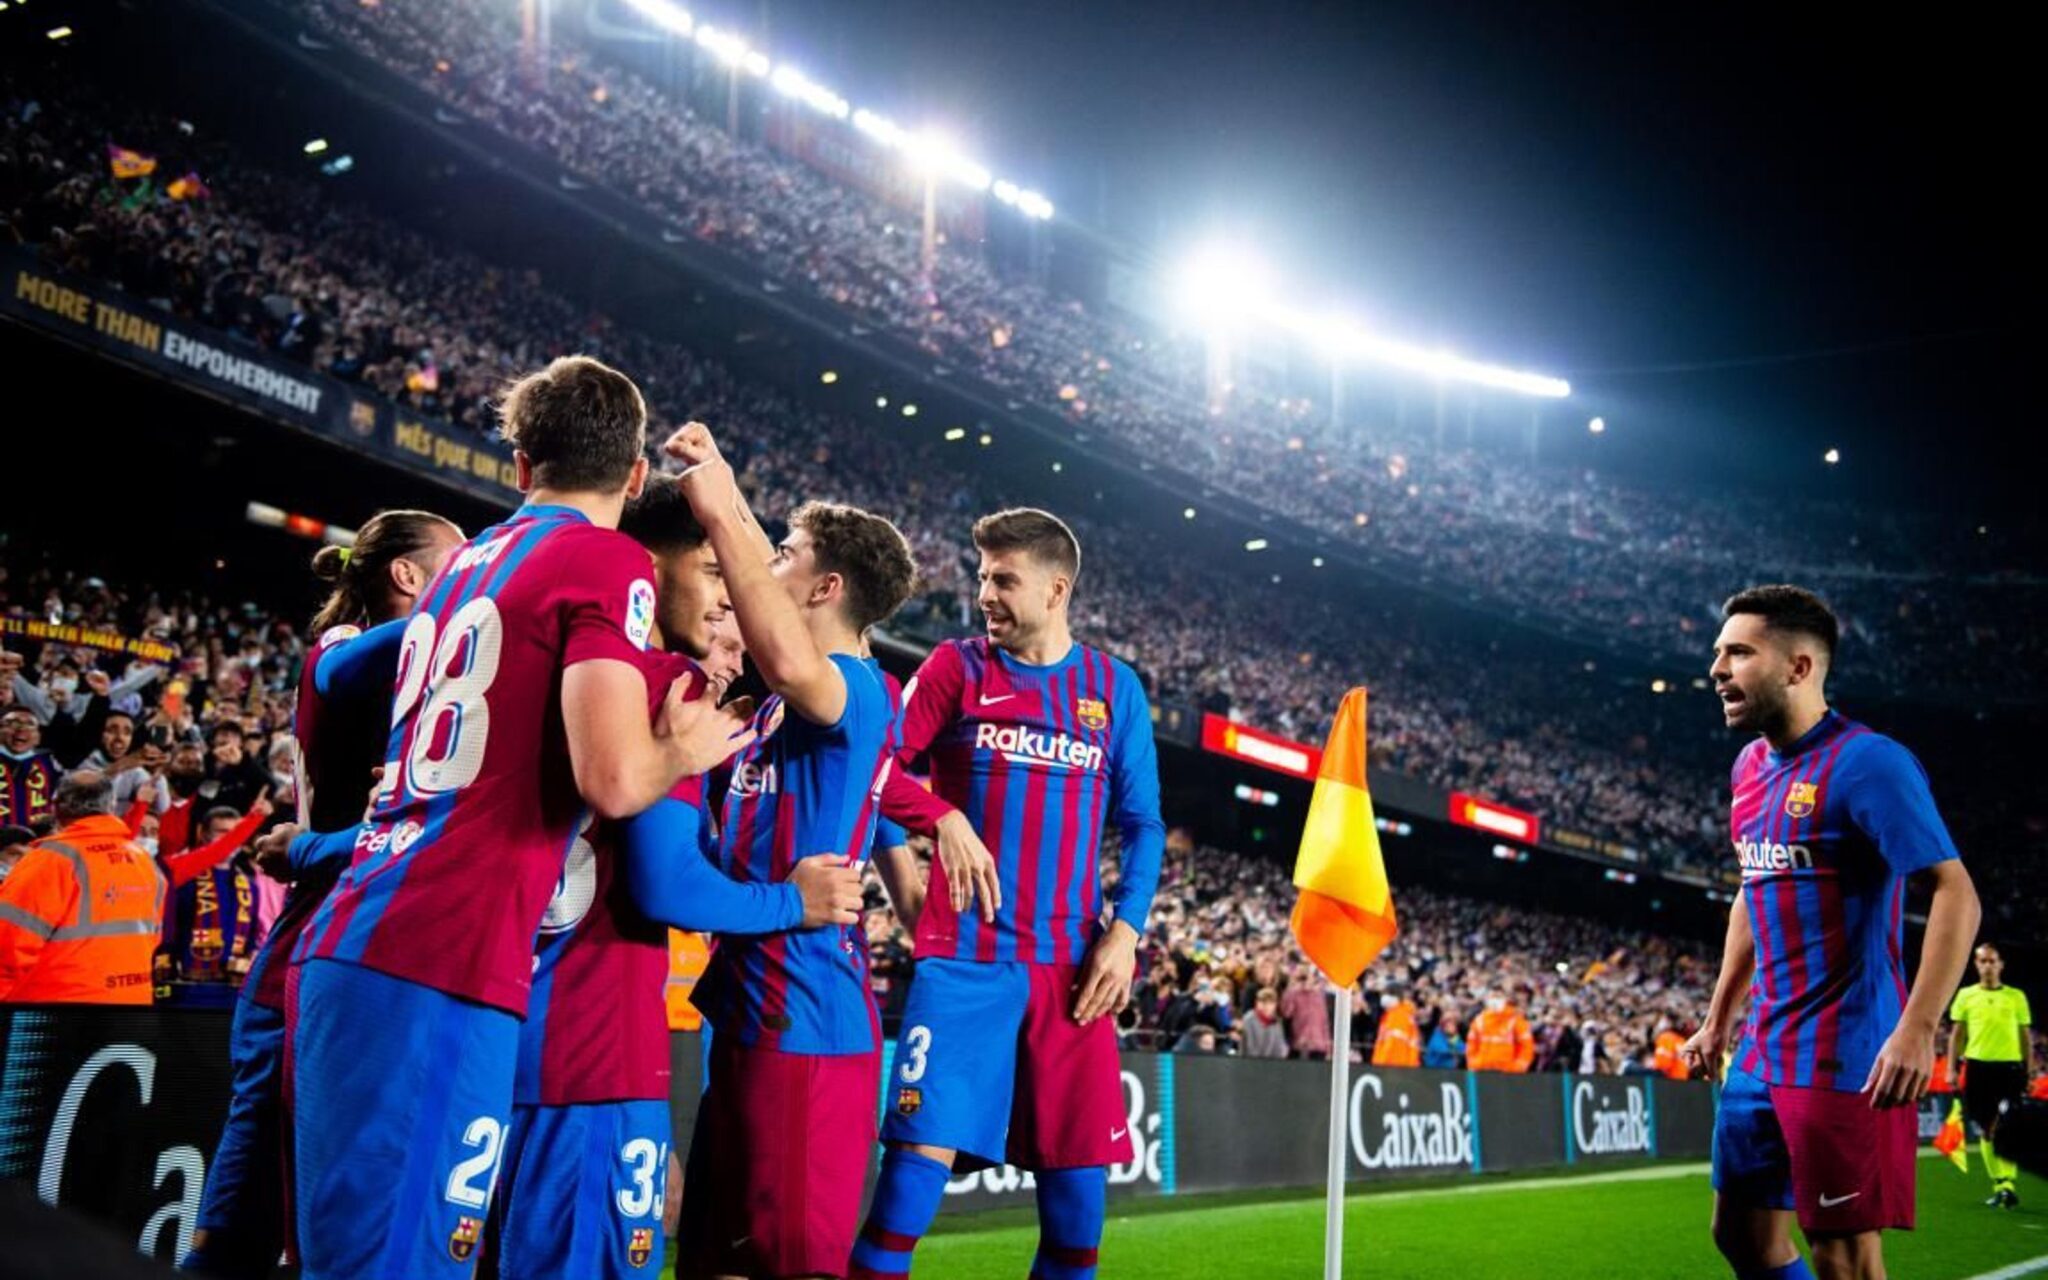 Vorschau Espanyol vs. Barcelona | Barça will Derbyserie ausbauen